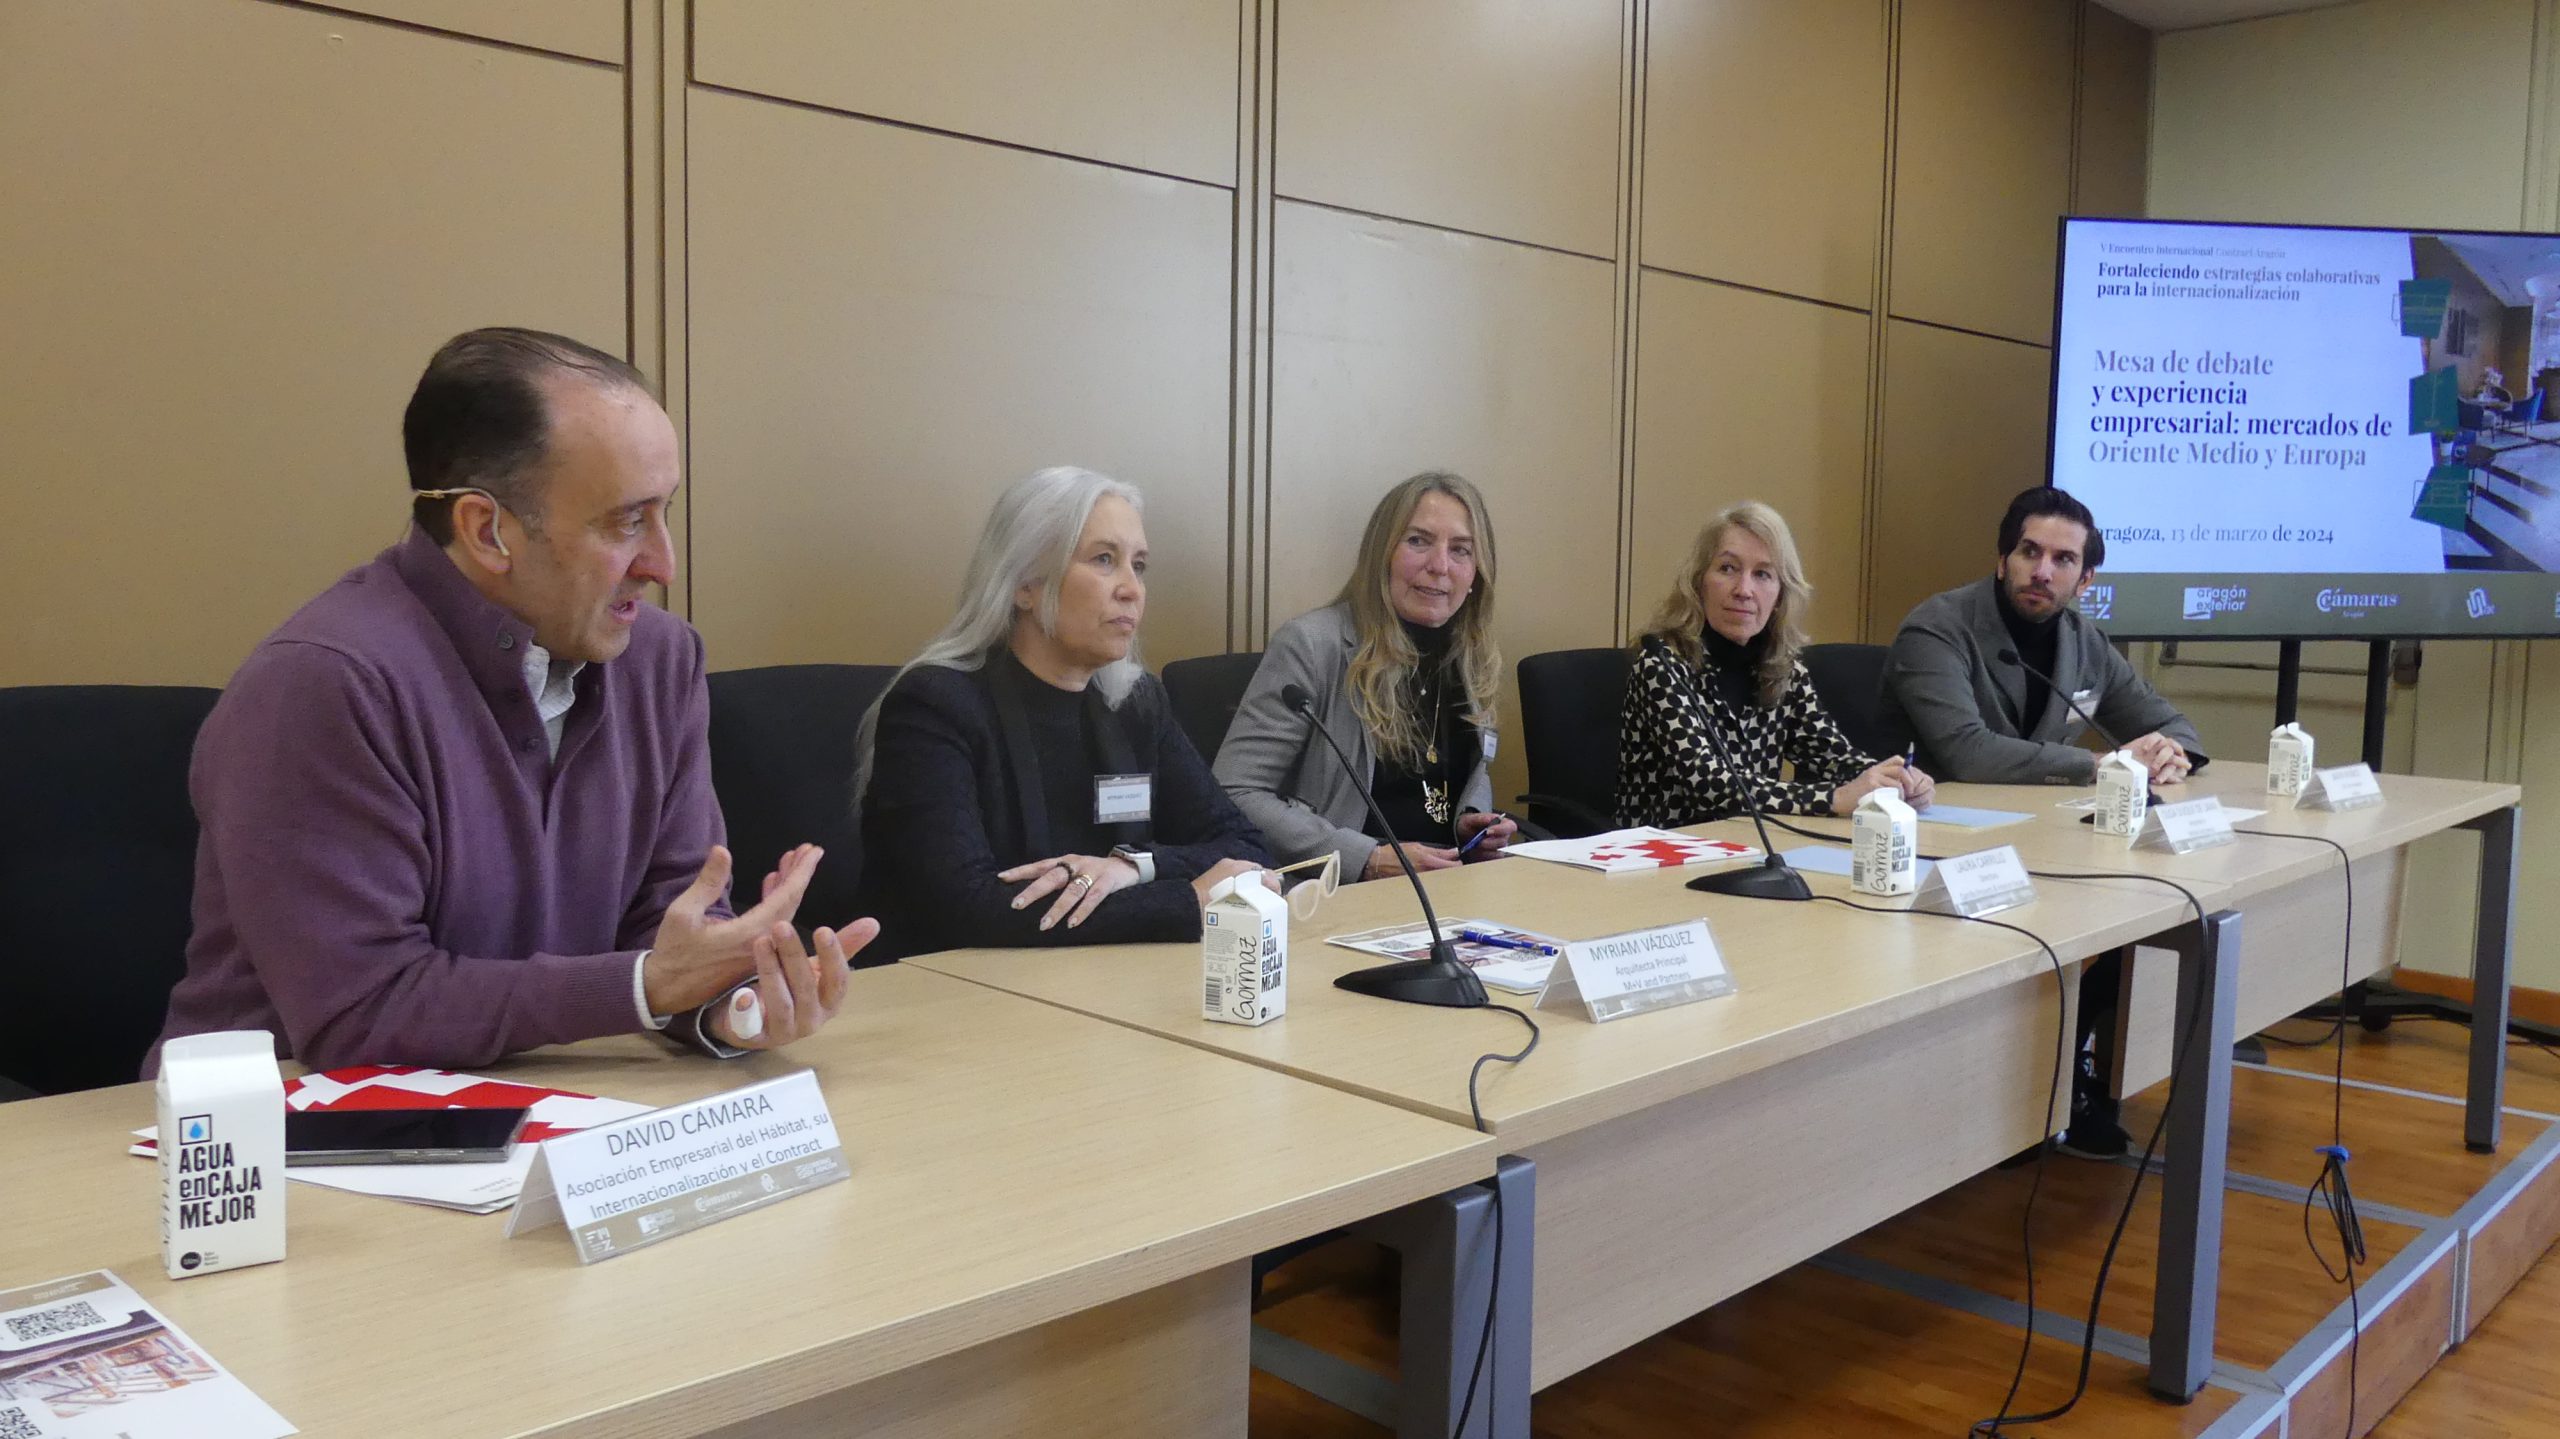 V Encuentro Internacional Contract Aragón